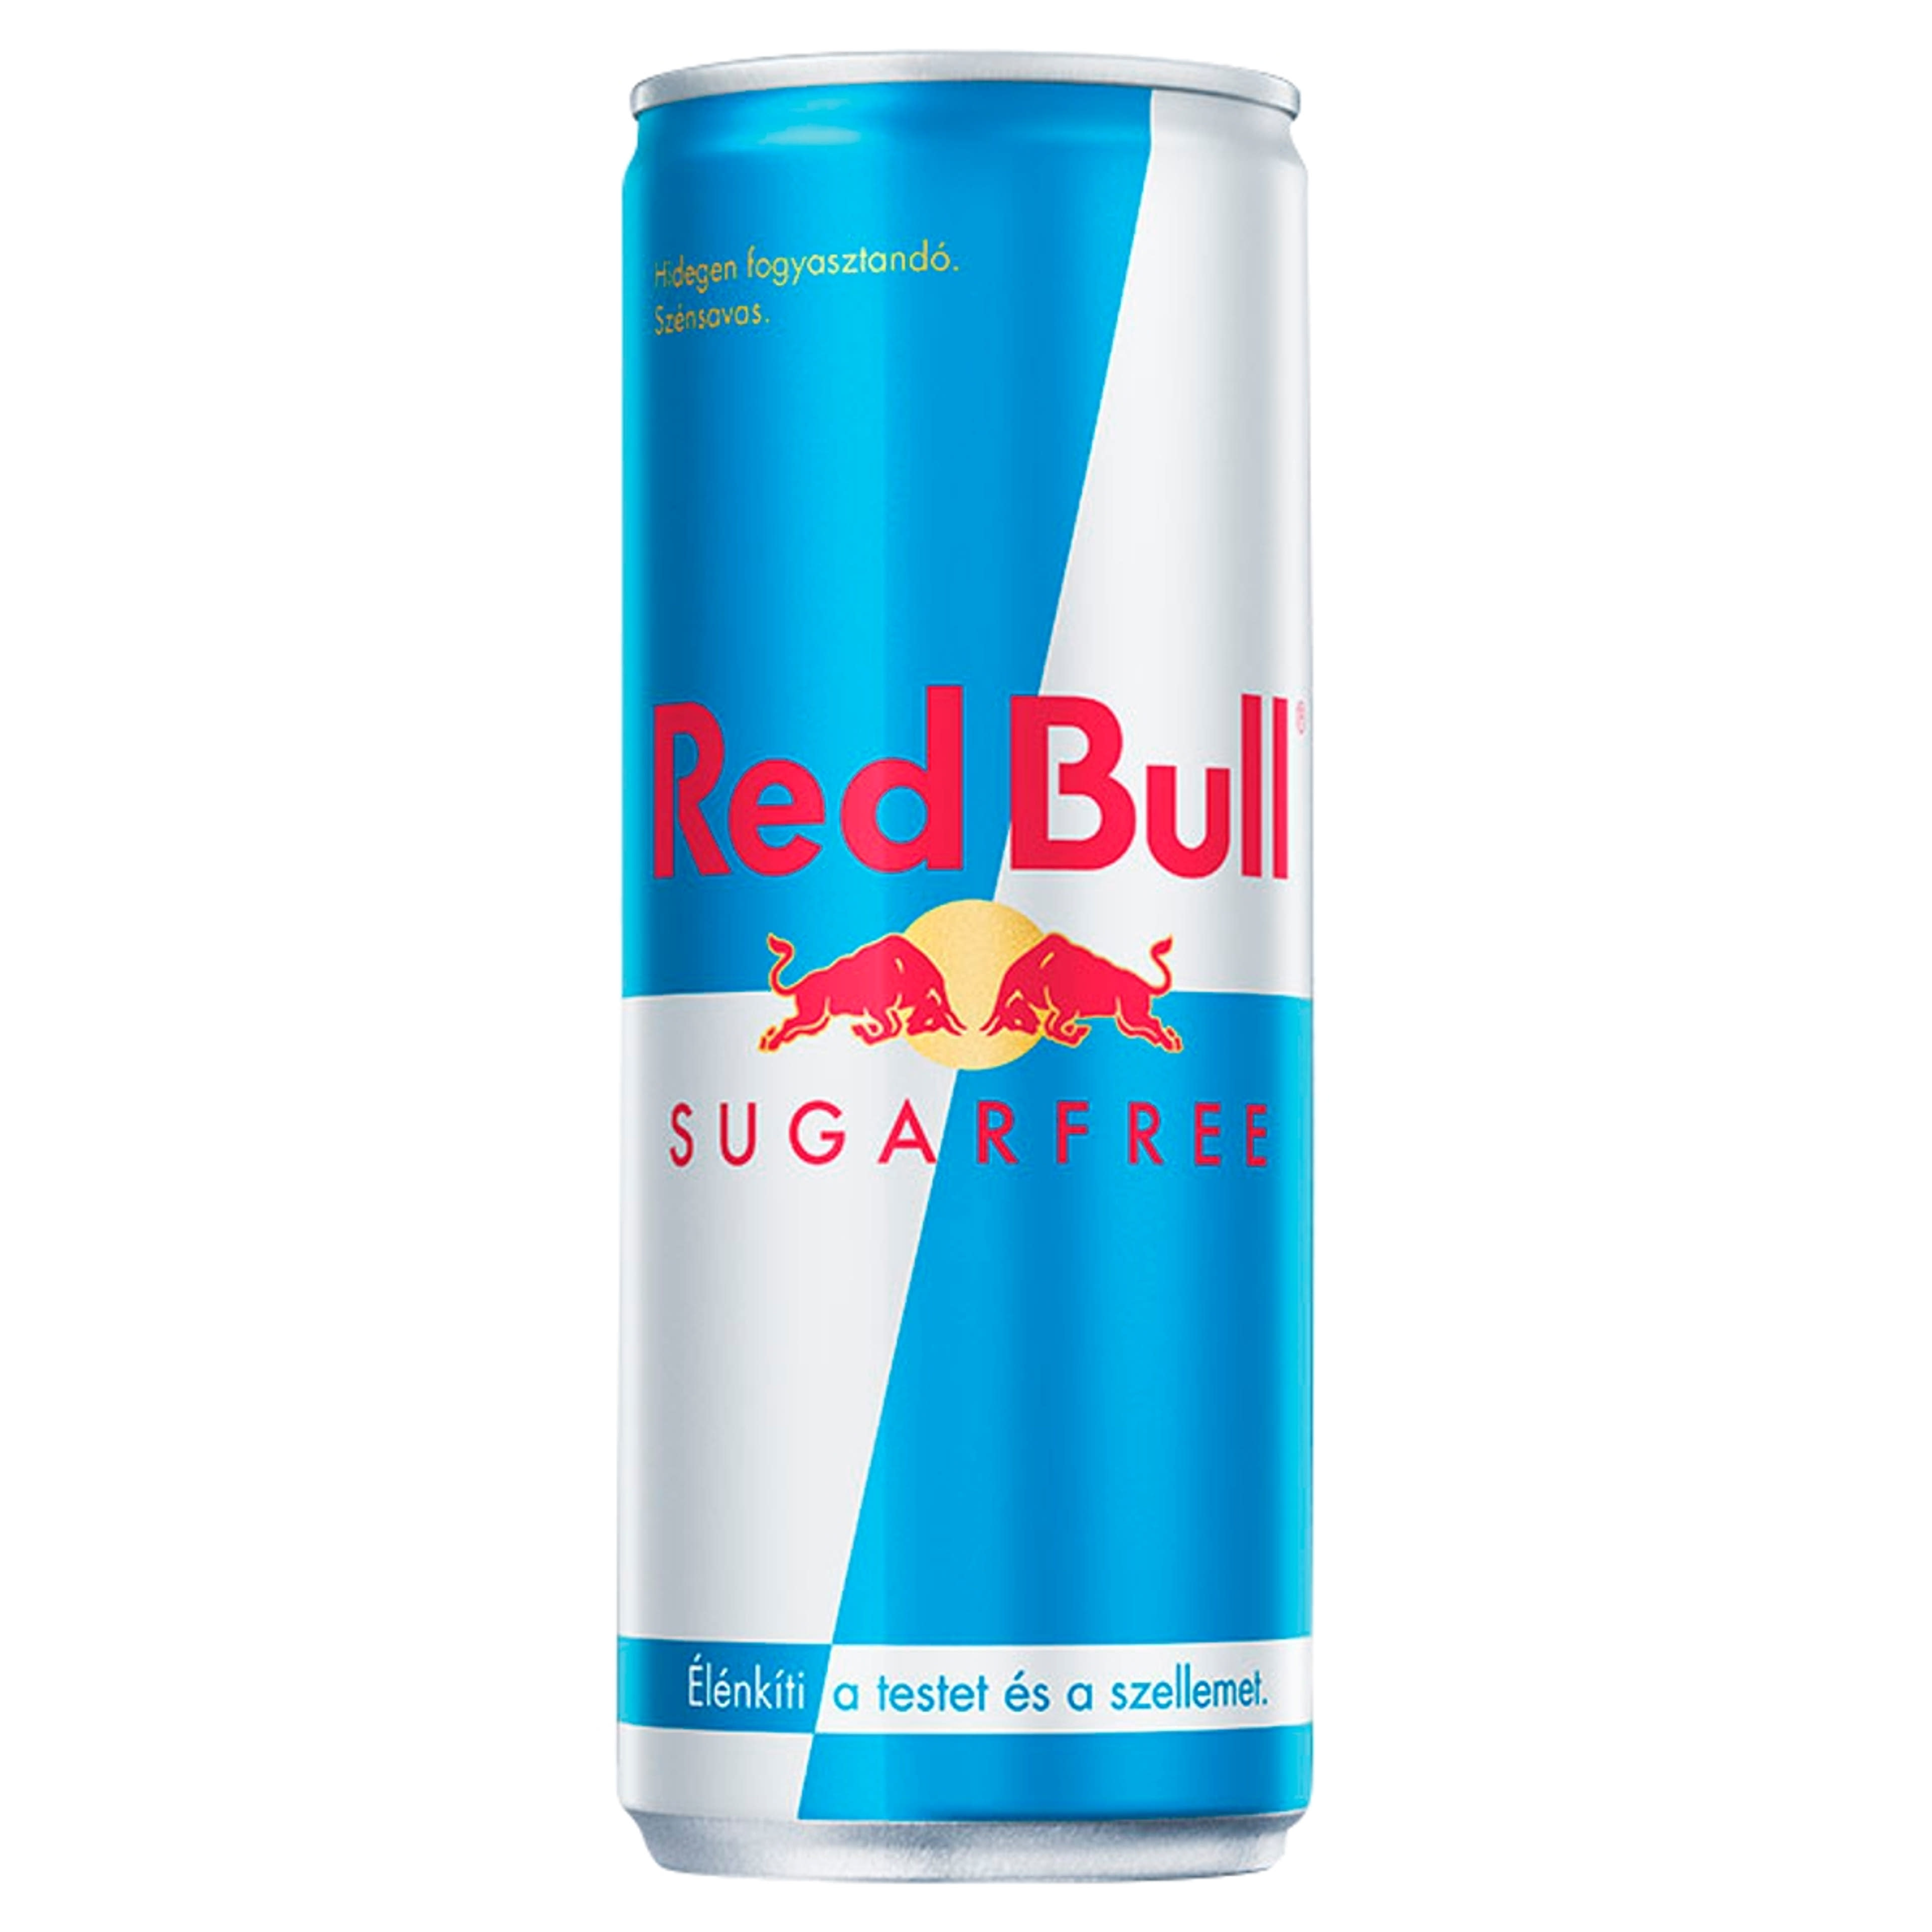 Red bull cukormentes energiaital - 250 ml-1